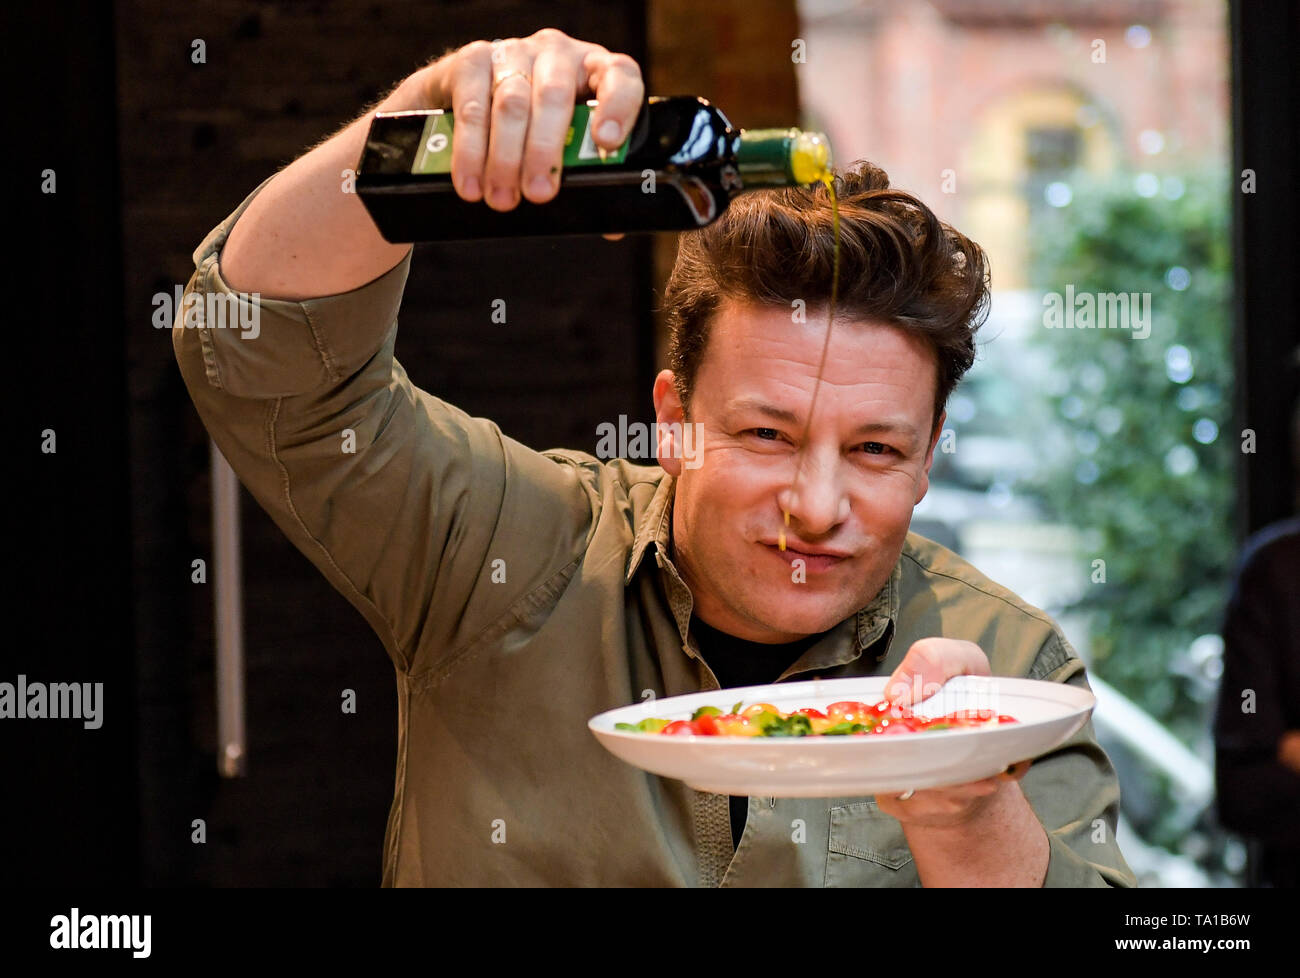 Amburgo, Germania. 6 dicembre, 2017. La chef inglese Jamie Oliver cuochi in cucina culinario scuola di Amburgo, Germania, 6 dicembre 2017. Oliver ha anche presentato il suo libro "5 ingredienti   Quick & Easy Ricette". Credito: Axel Heimken/dpa | in tutto il mondo di utilizzo/dpa/Alamy Live News Foto Stock